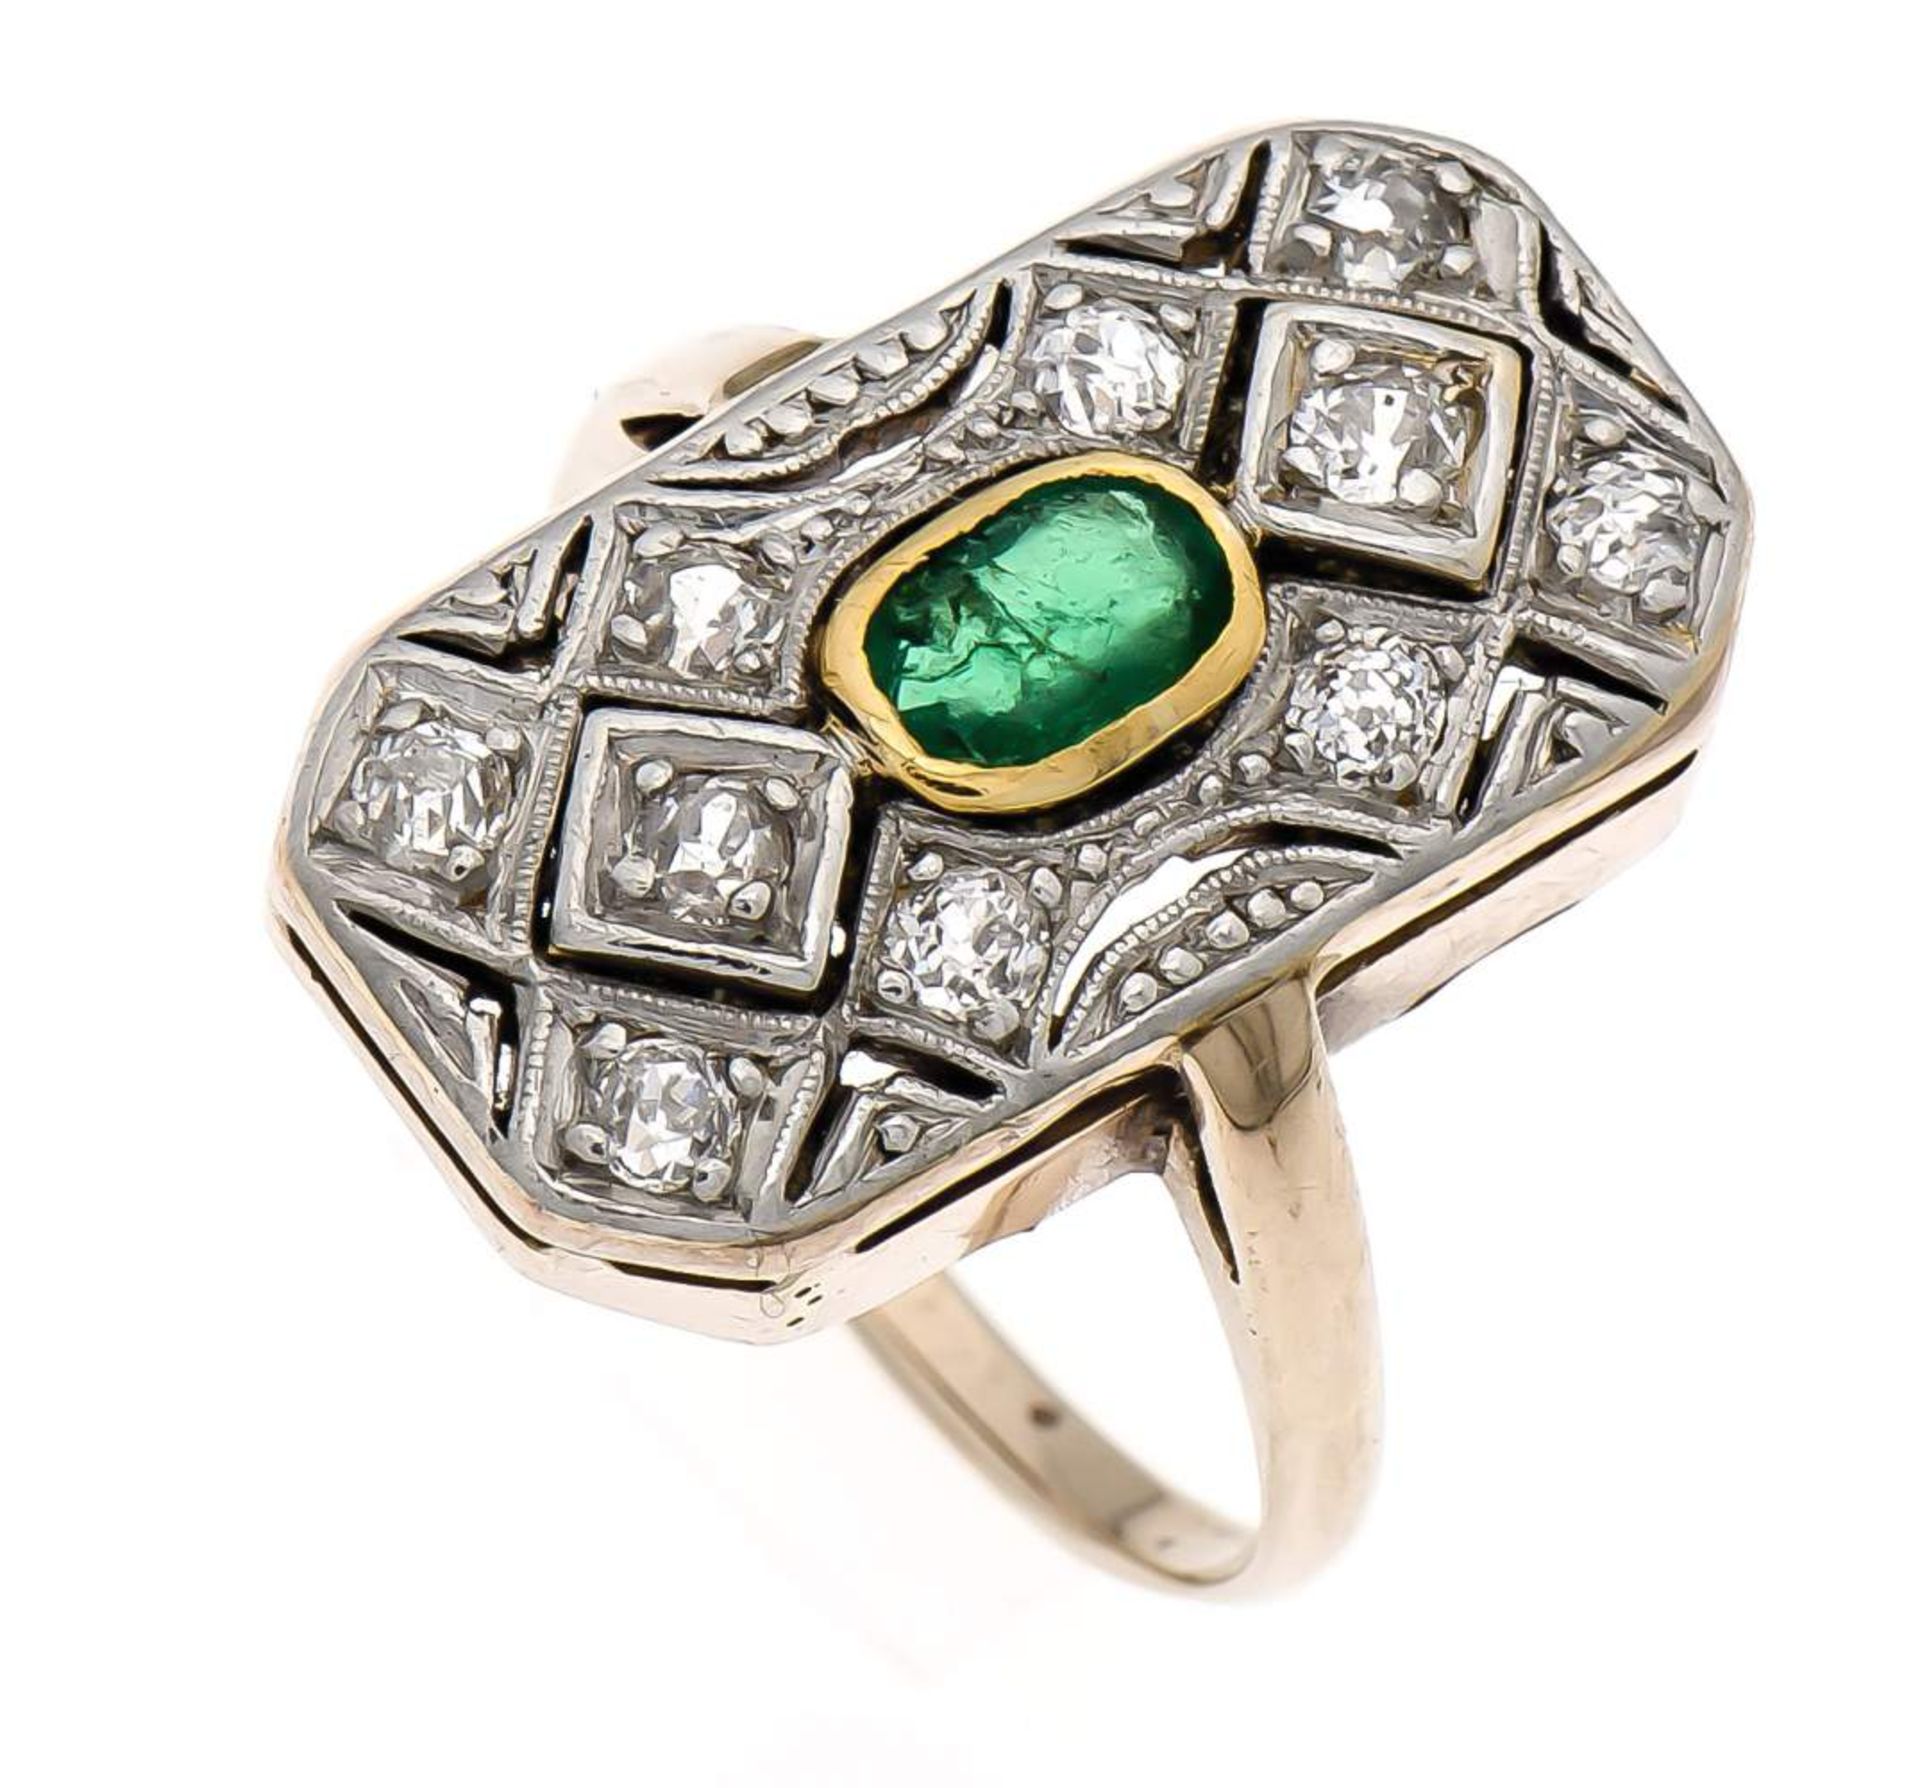 Smaragd-Altschliff-Diamant-Ring WG/GG 585/000 mit einem fac. Smaragd 5 x 3 mm (berieben)und 10